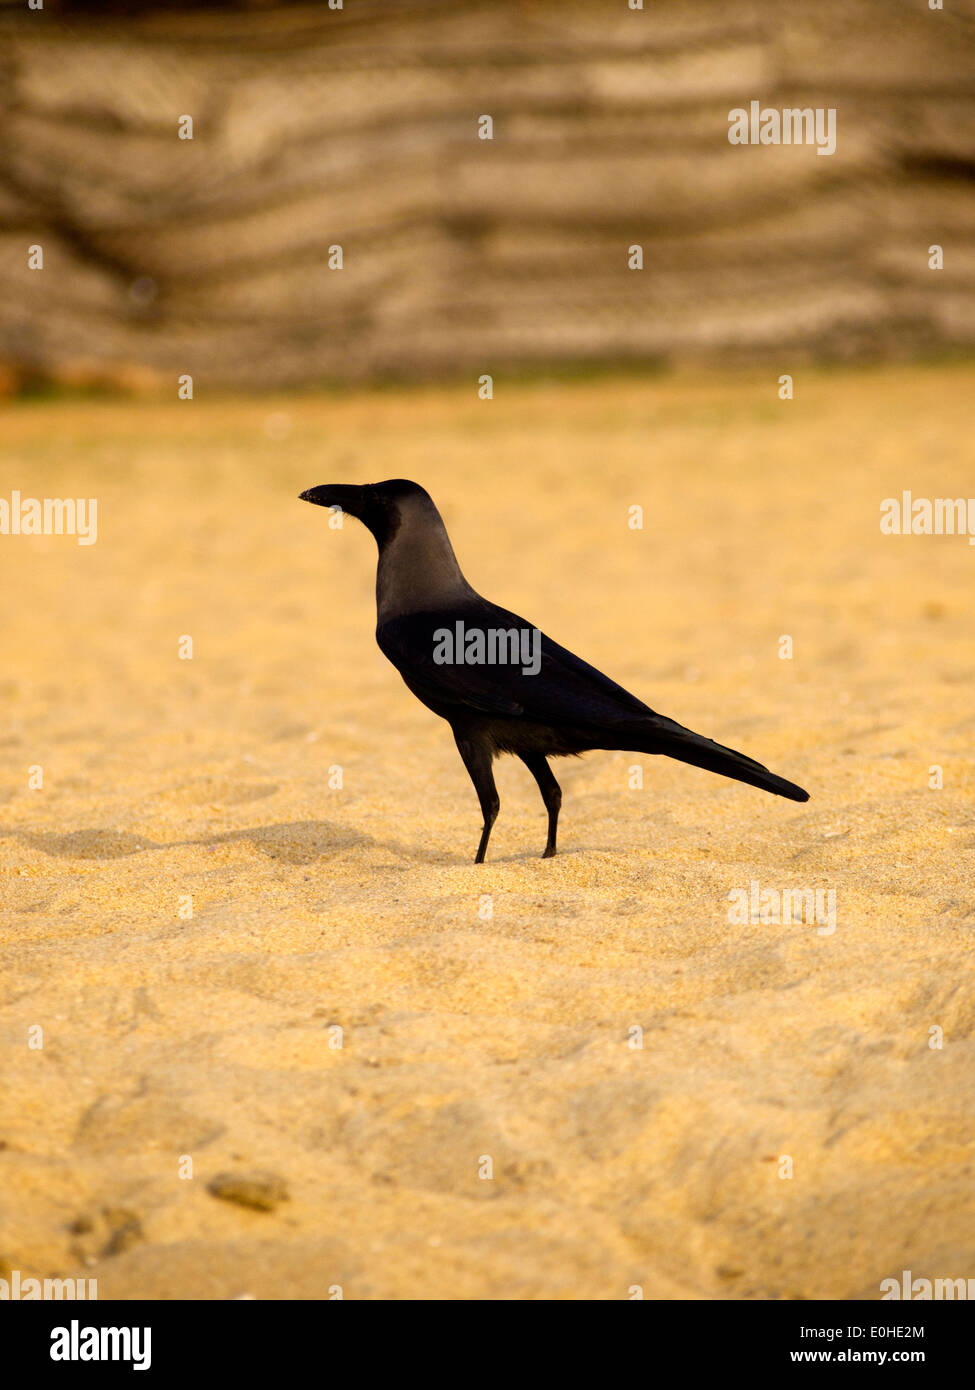 Black raven at the beach in Sri Lanka Stock Photo